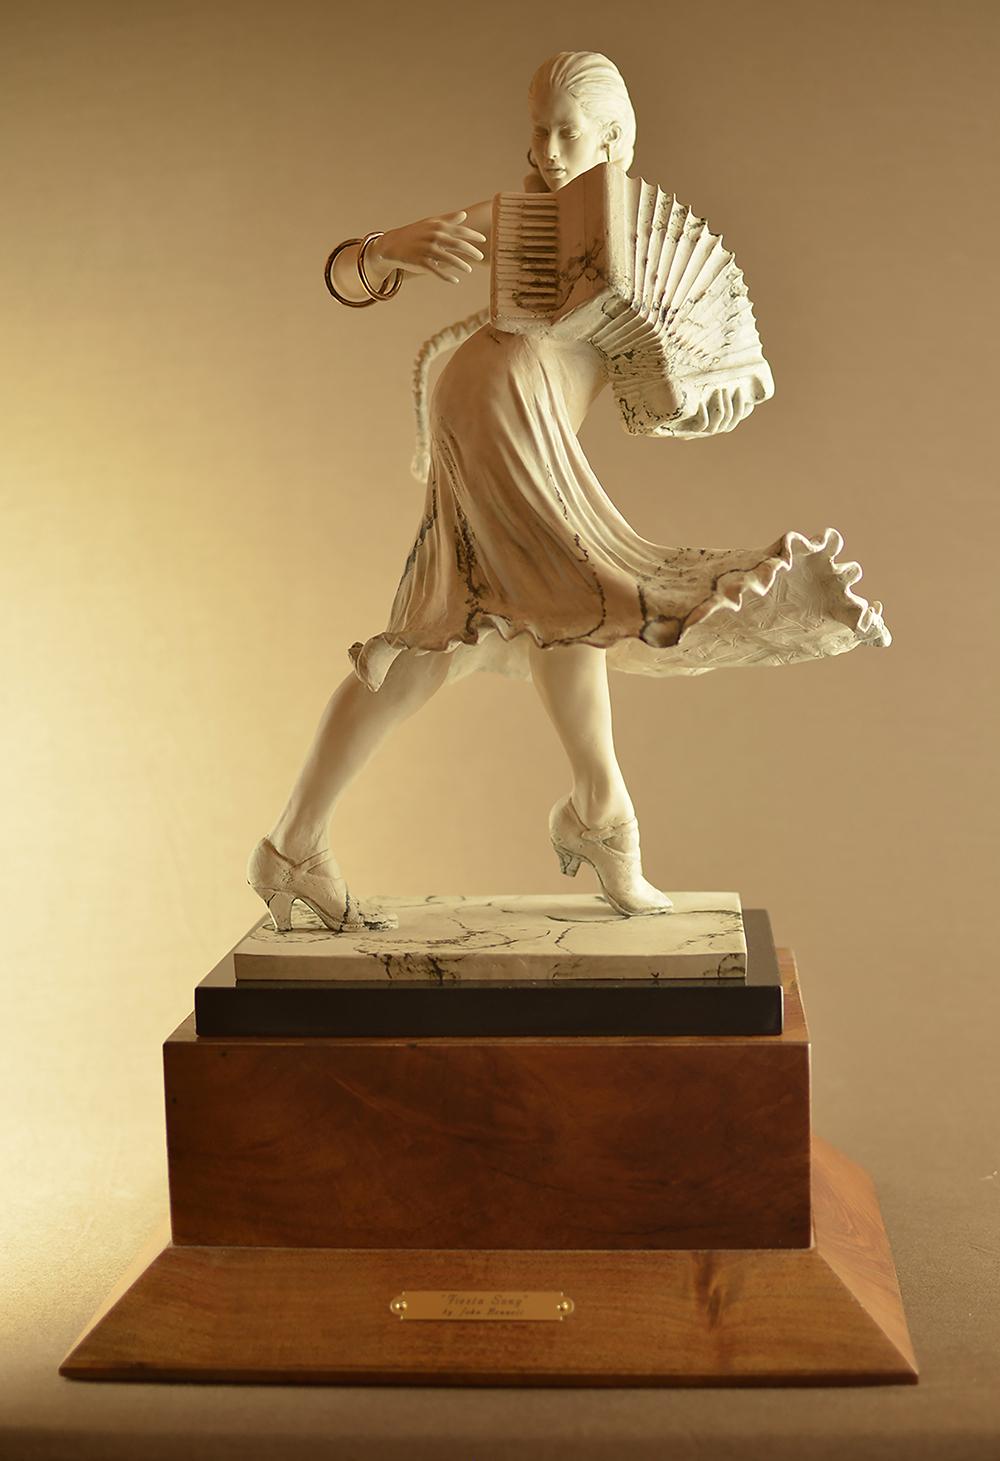 John Bennett Figurative Sculpture - "FIESTA SONG" ACCORDION PLAYER BRONZE SCULPTURE